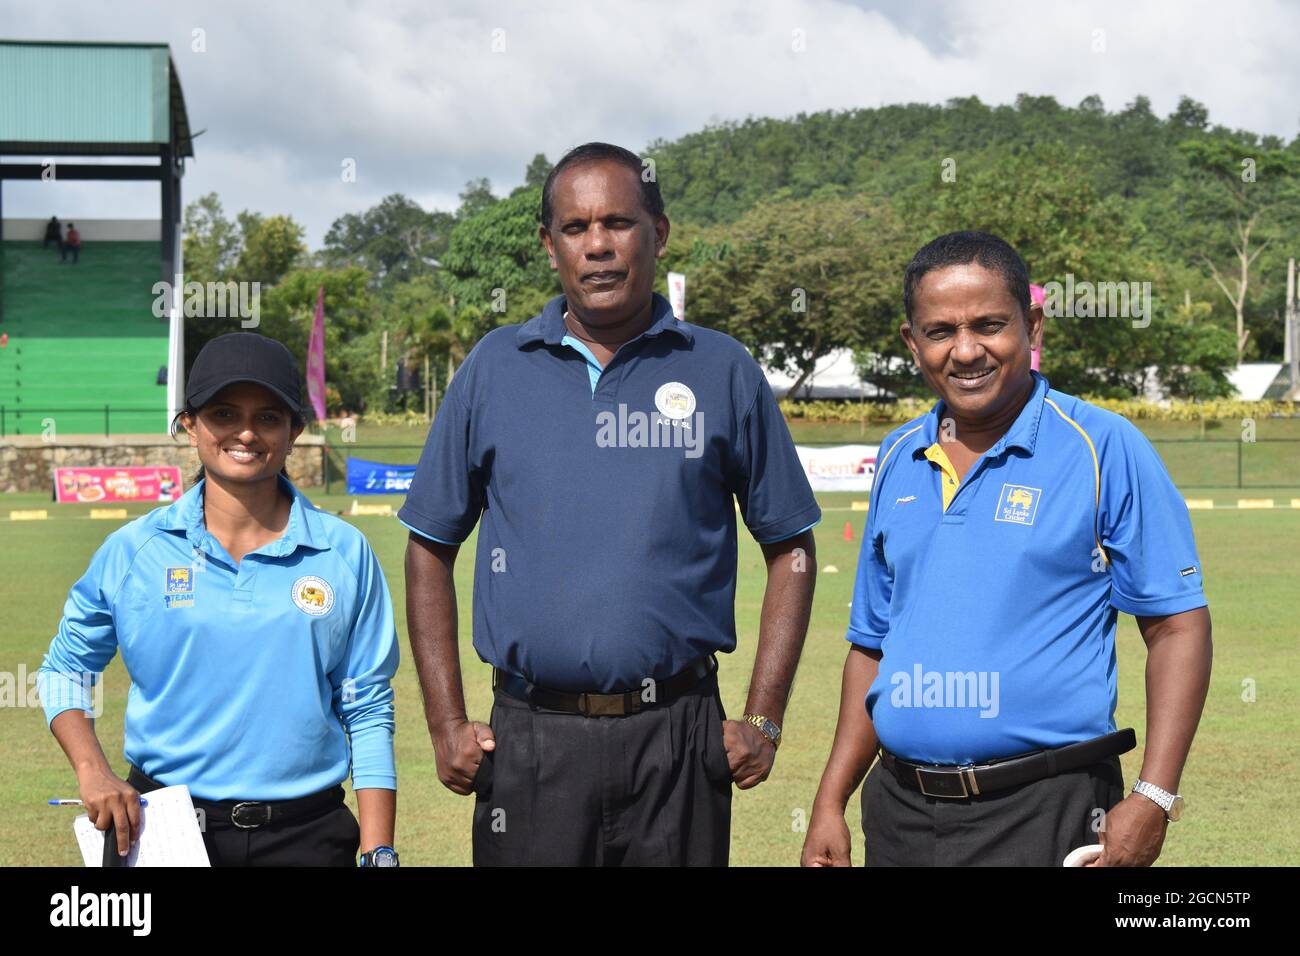 Un arbitre de cricket féminin au Sri Lanka avec des arbitres masculins lors d'un match de cricket au terrain de cricket de l'Armée de terre, Dombagoda. Les femmes qui ont été impliquées dans le cricket en tant que joueurs sont en train de prendre des arbitres et de marquer pour être impliquées dans le jeu. Sri Lanka. Banque D'Images